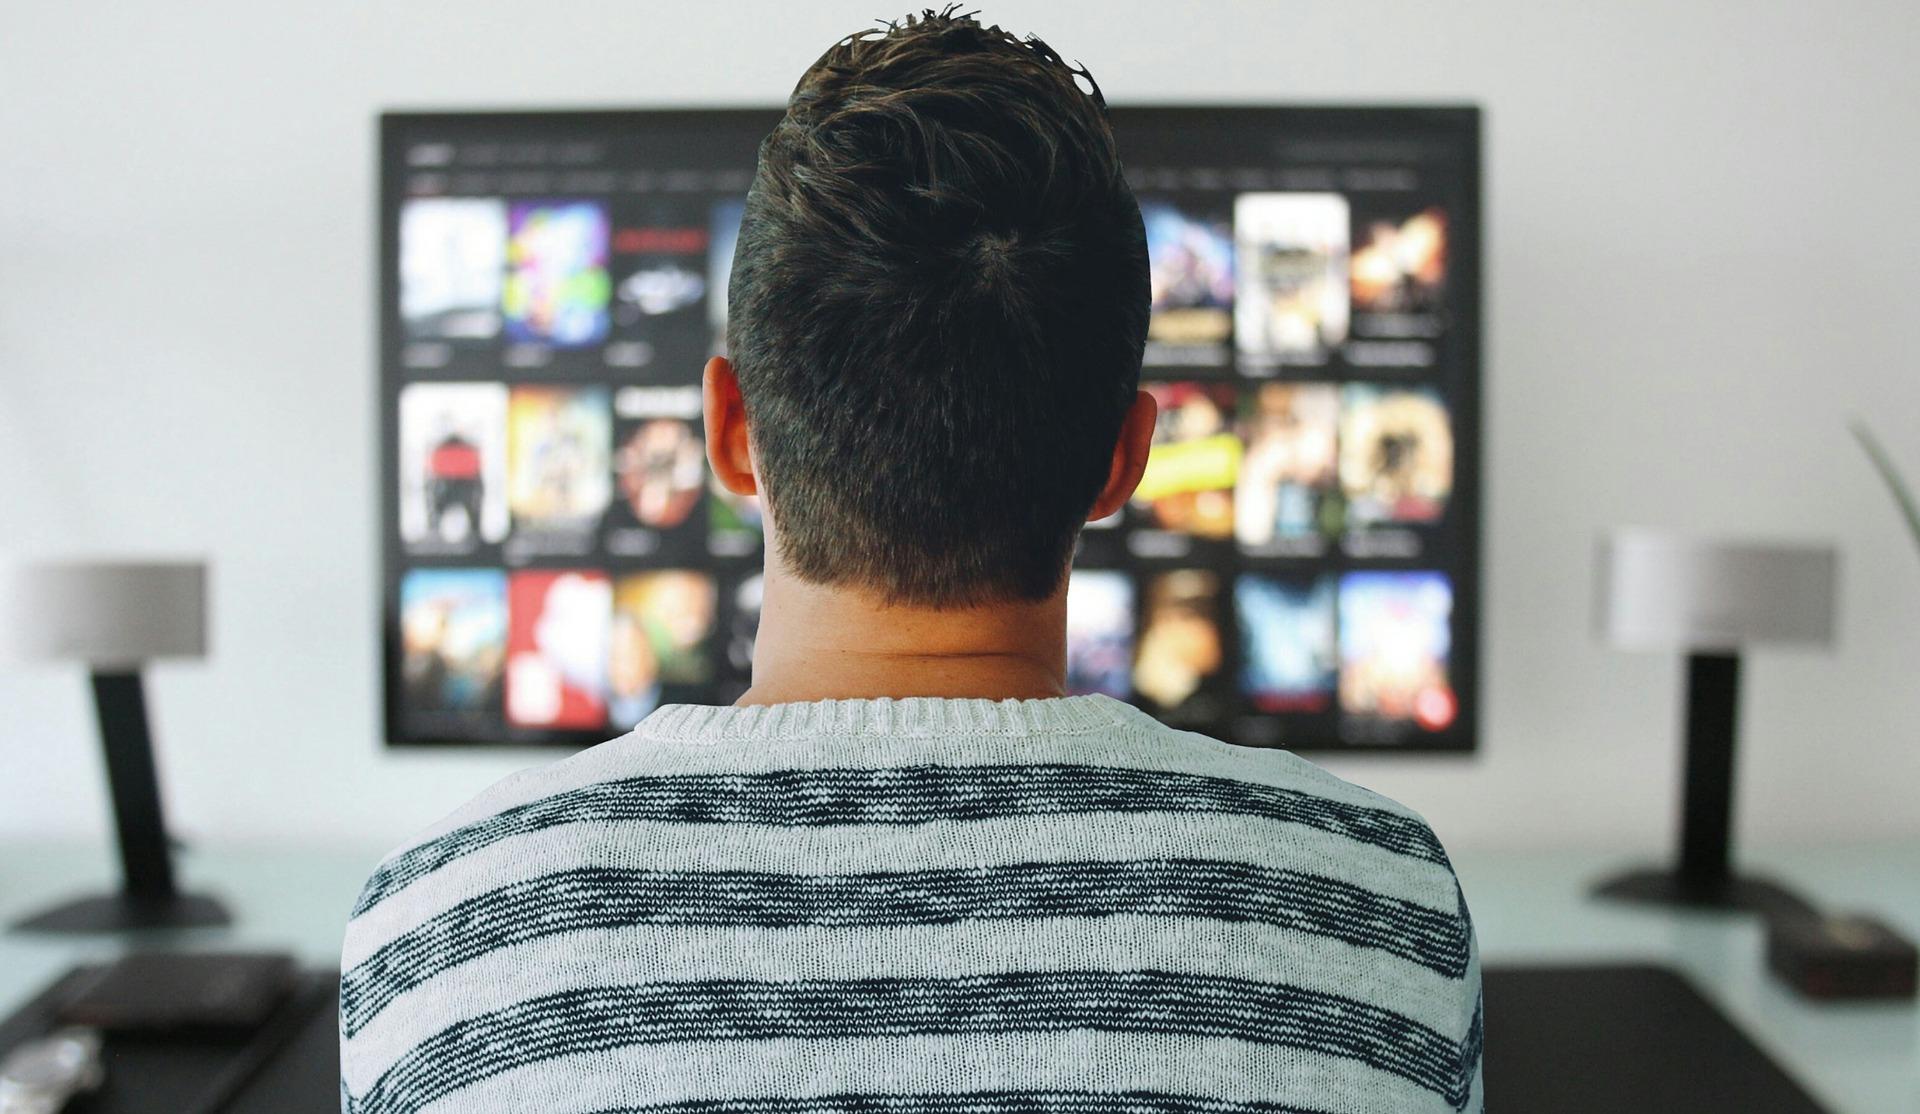 Un hombre viendo el catálogo de Netflix. Fuente: Pixabay.